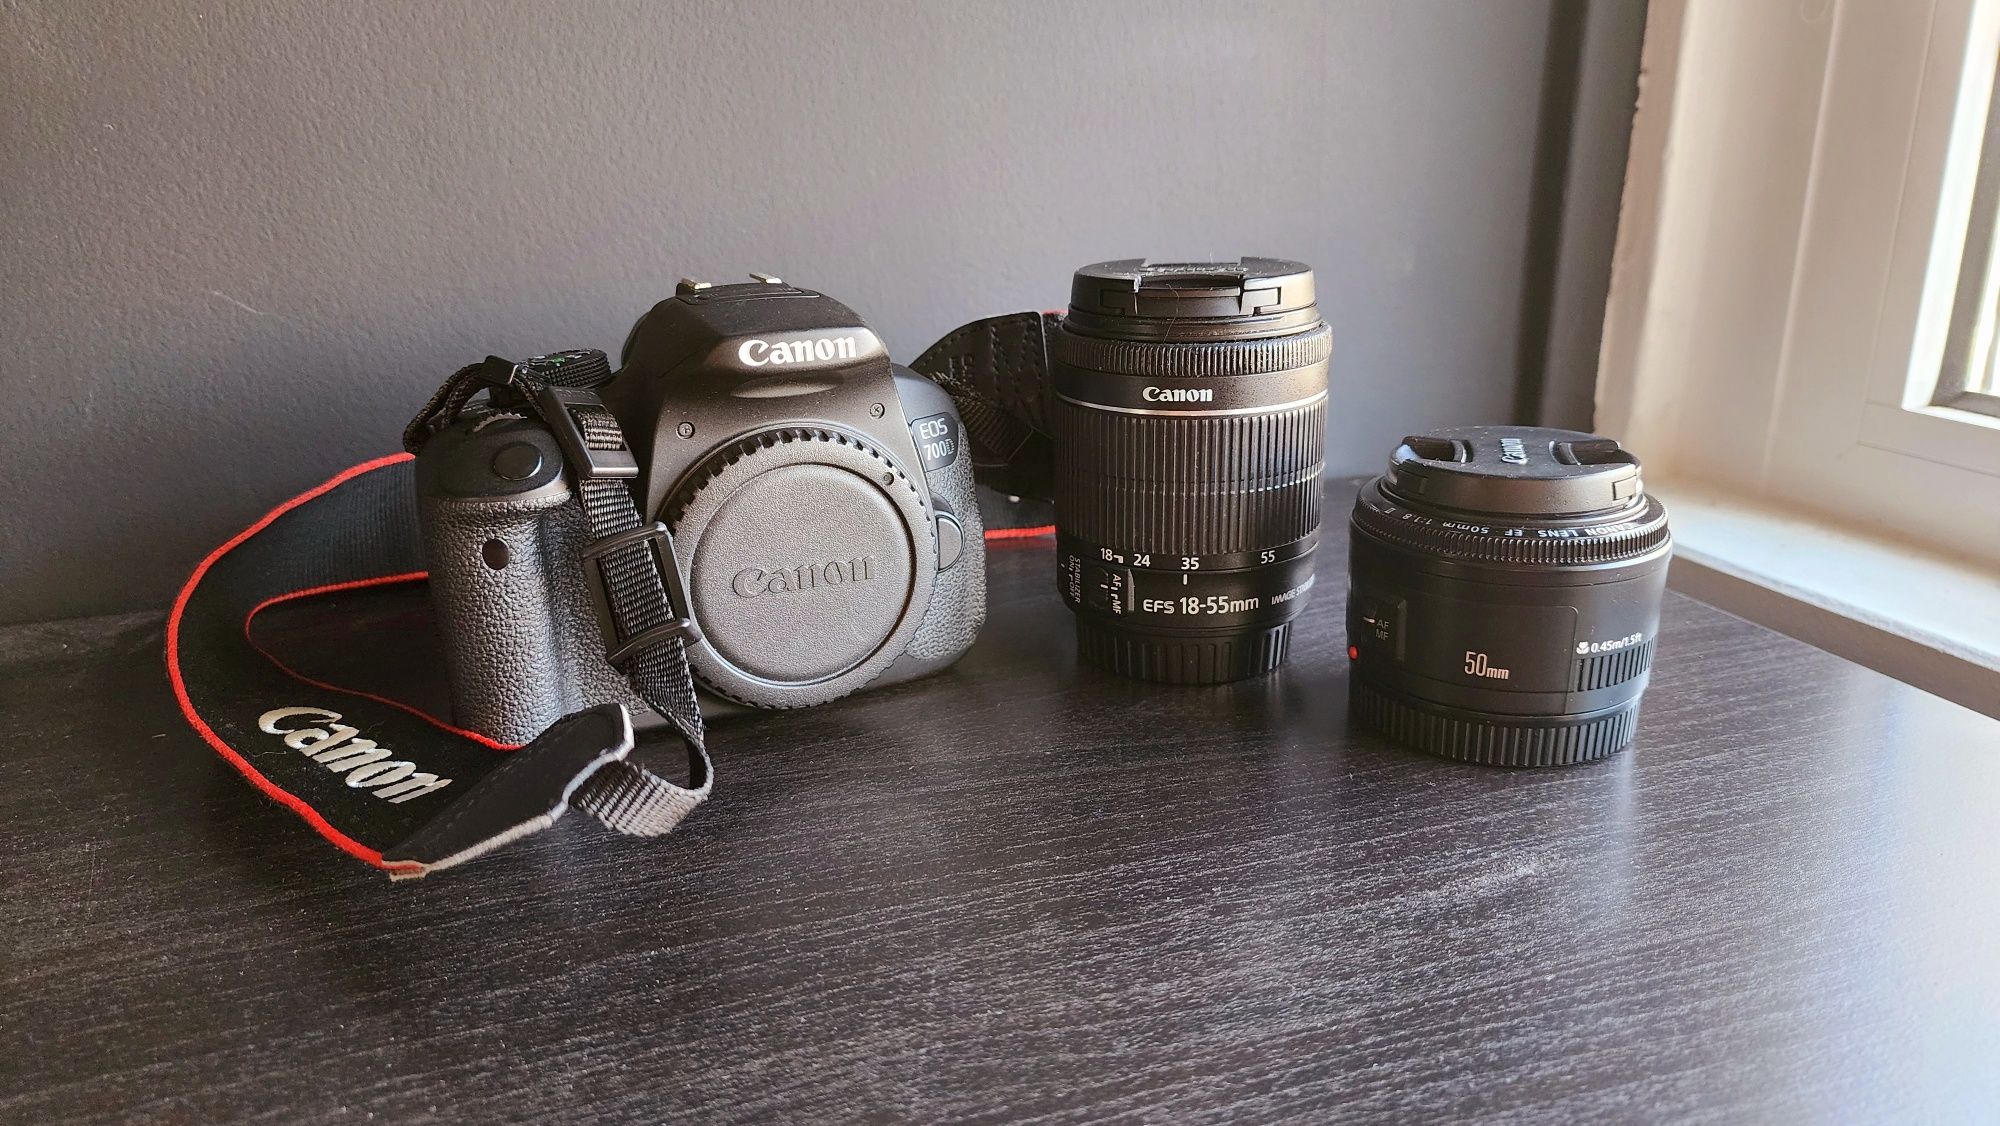 Canon EOS 700D + Extras - pouco uso - aceito troca